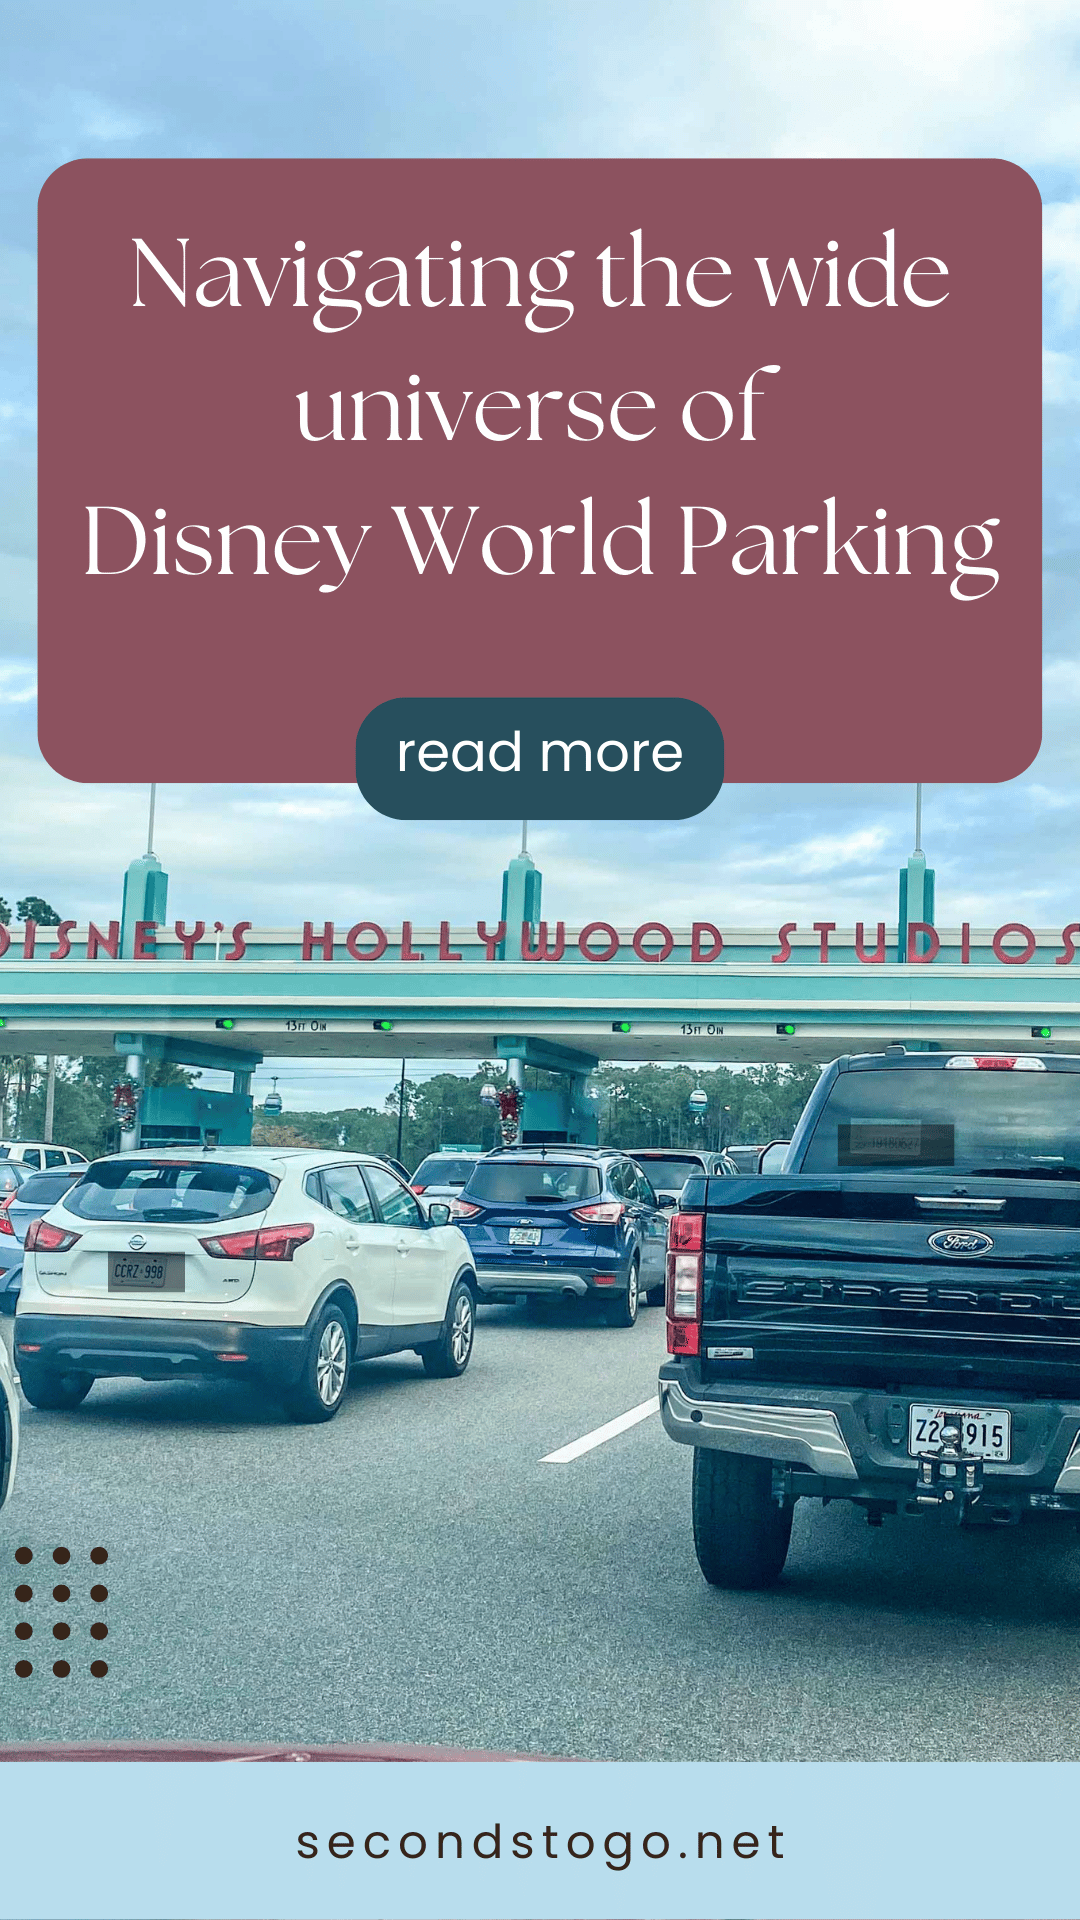 Disney world parking pin 1